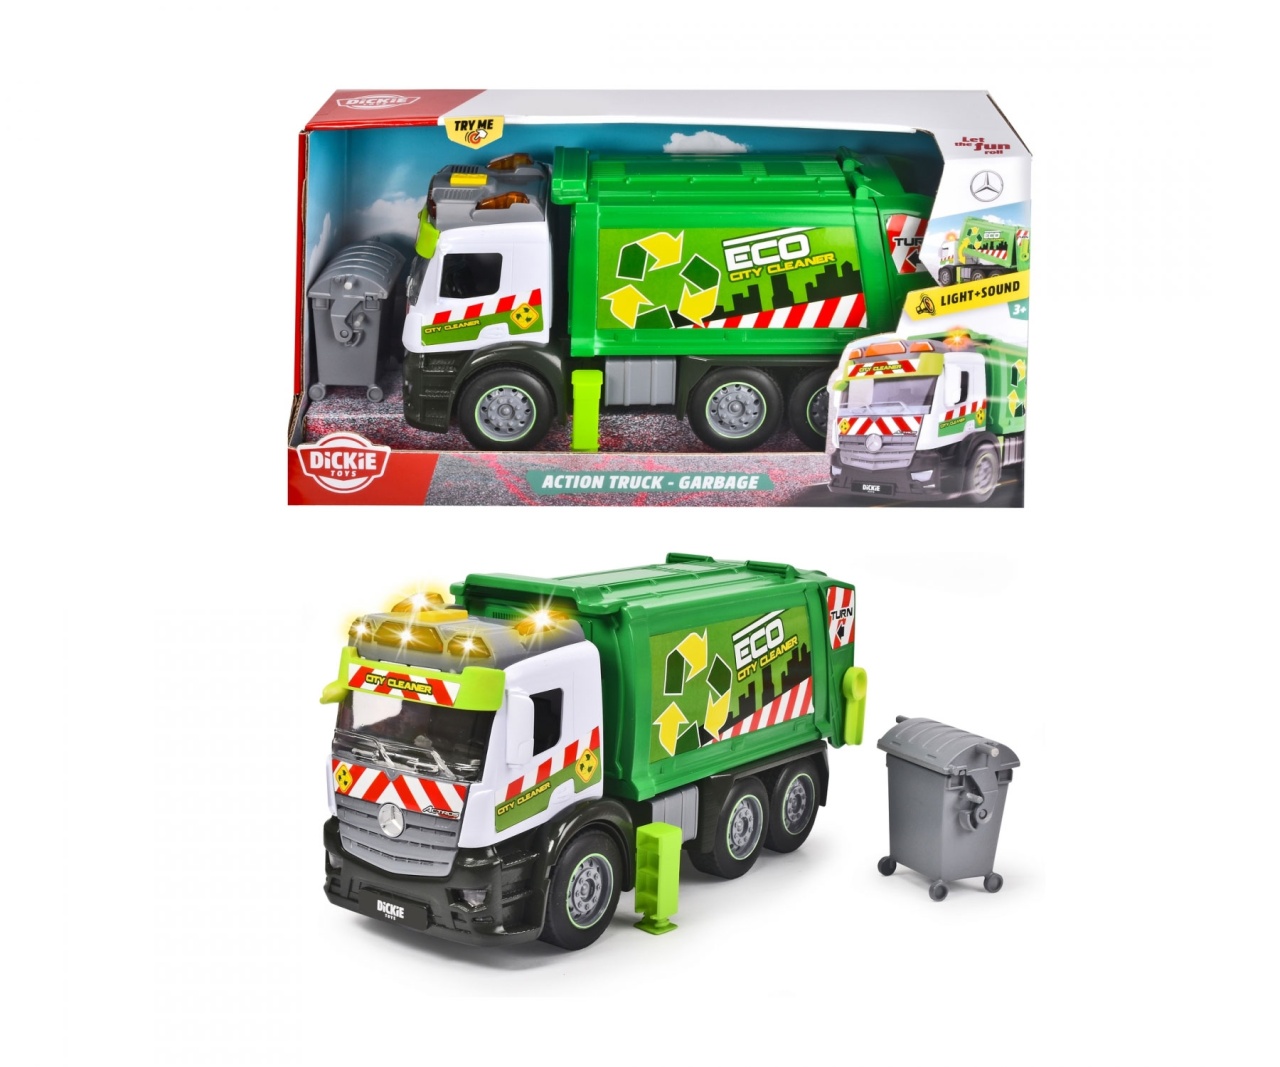 Action Truck - Garbage Müllauto von Dickie Toys